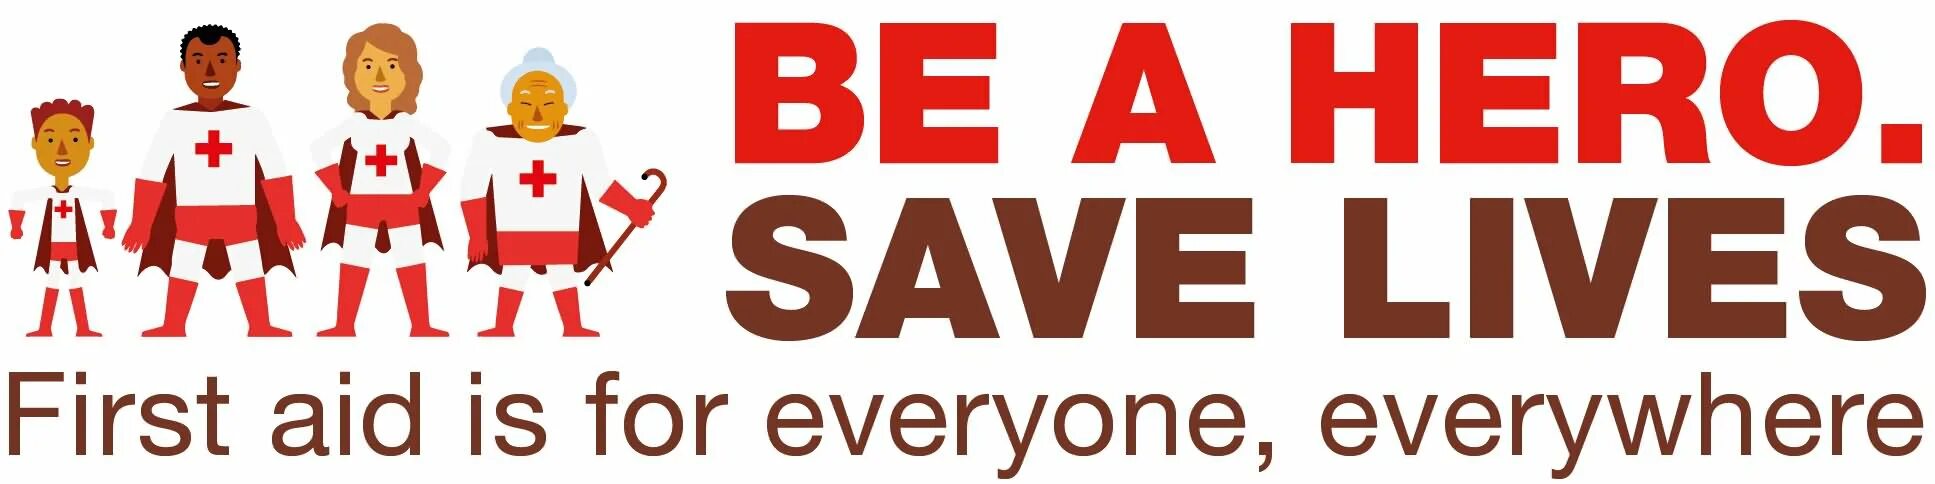 We save lives. Save Lives.